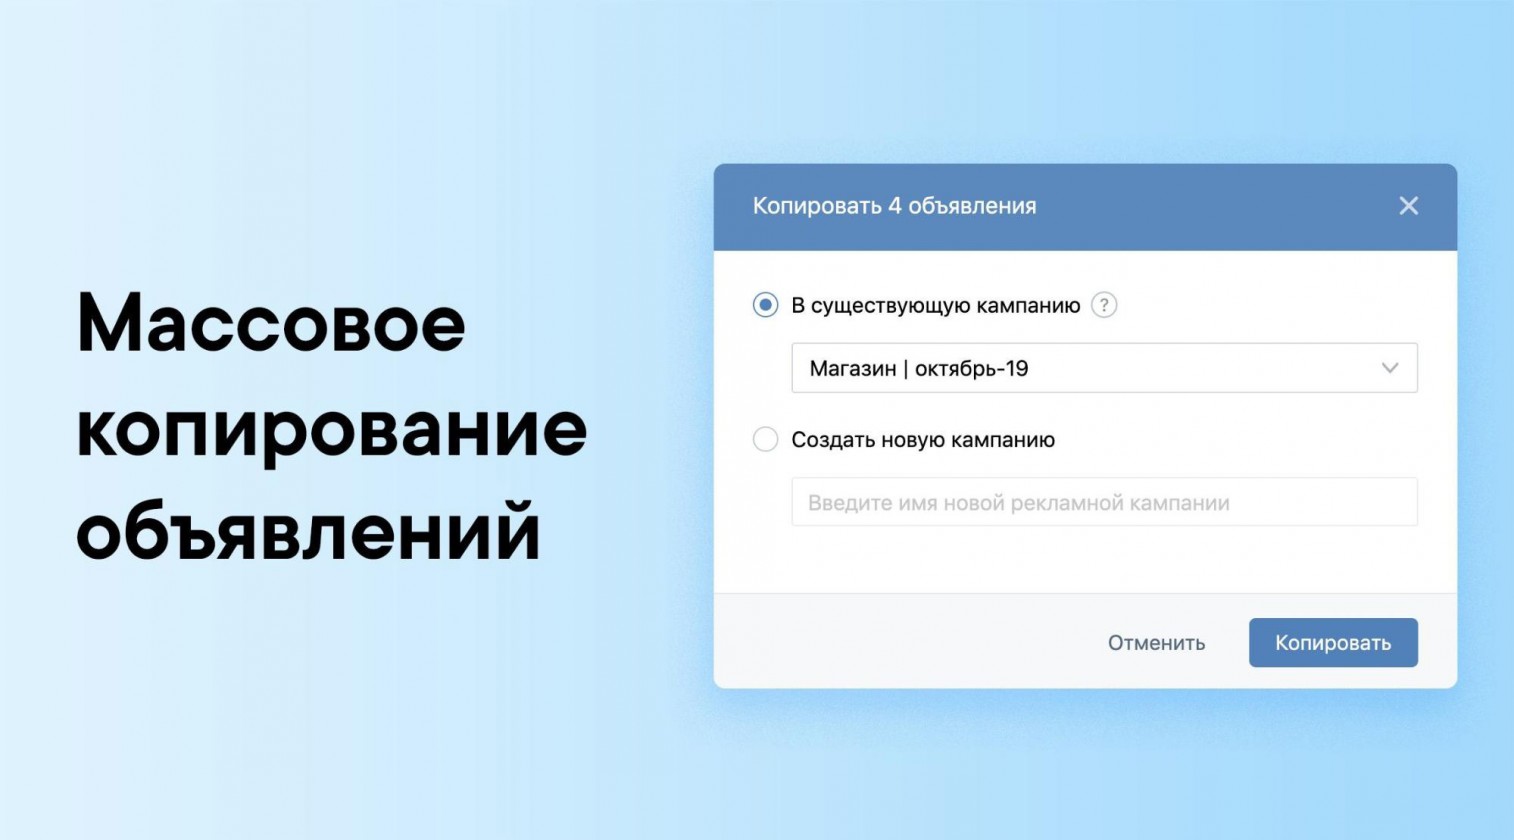 обновления ВКонтакте для бизнеса